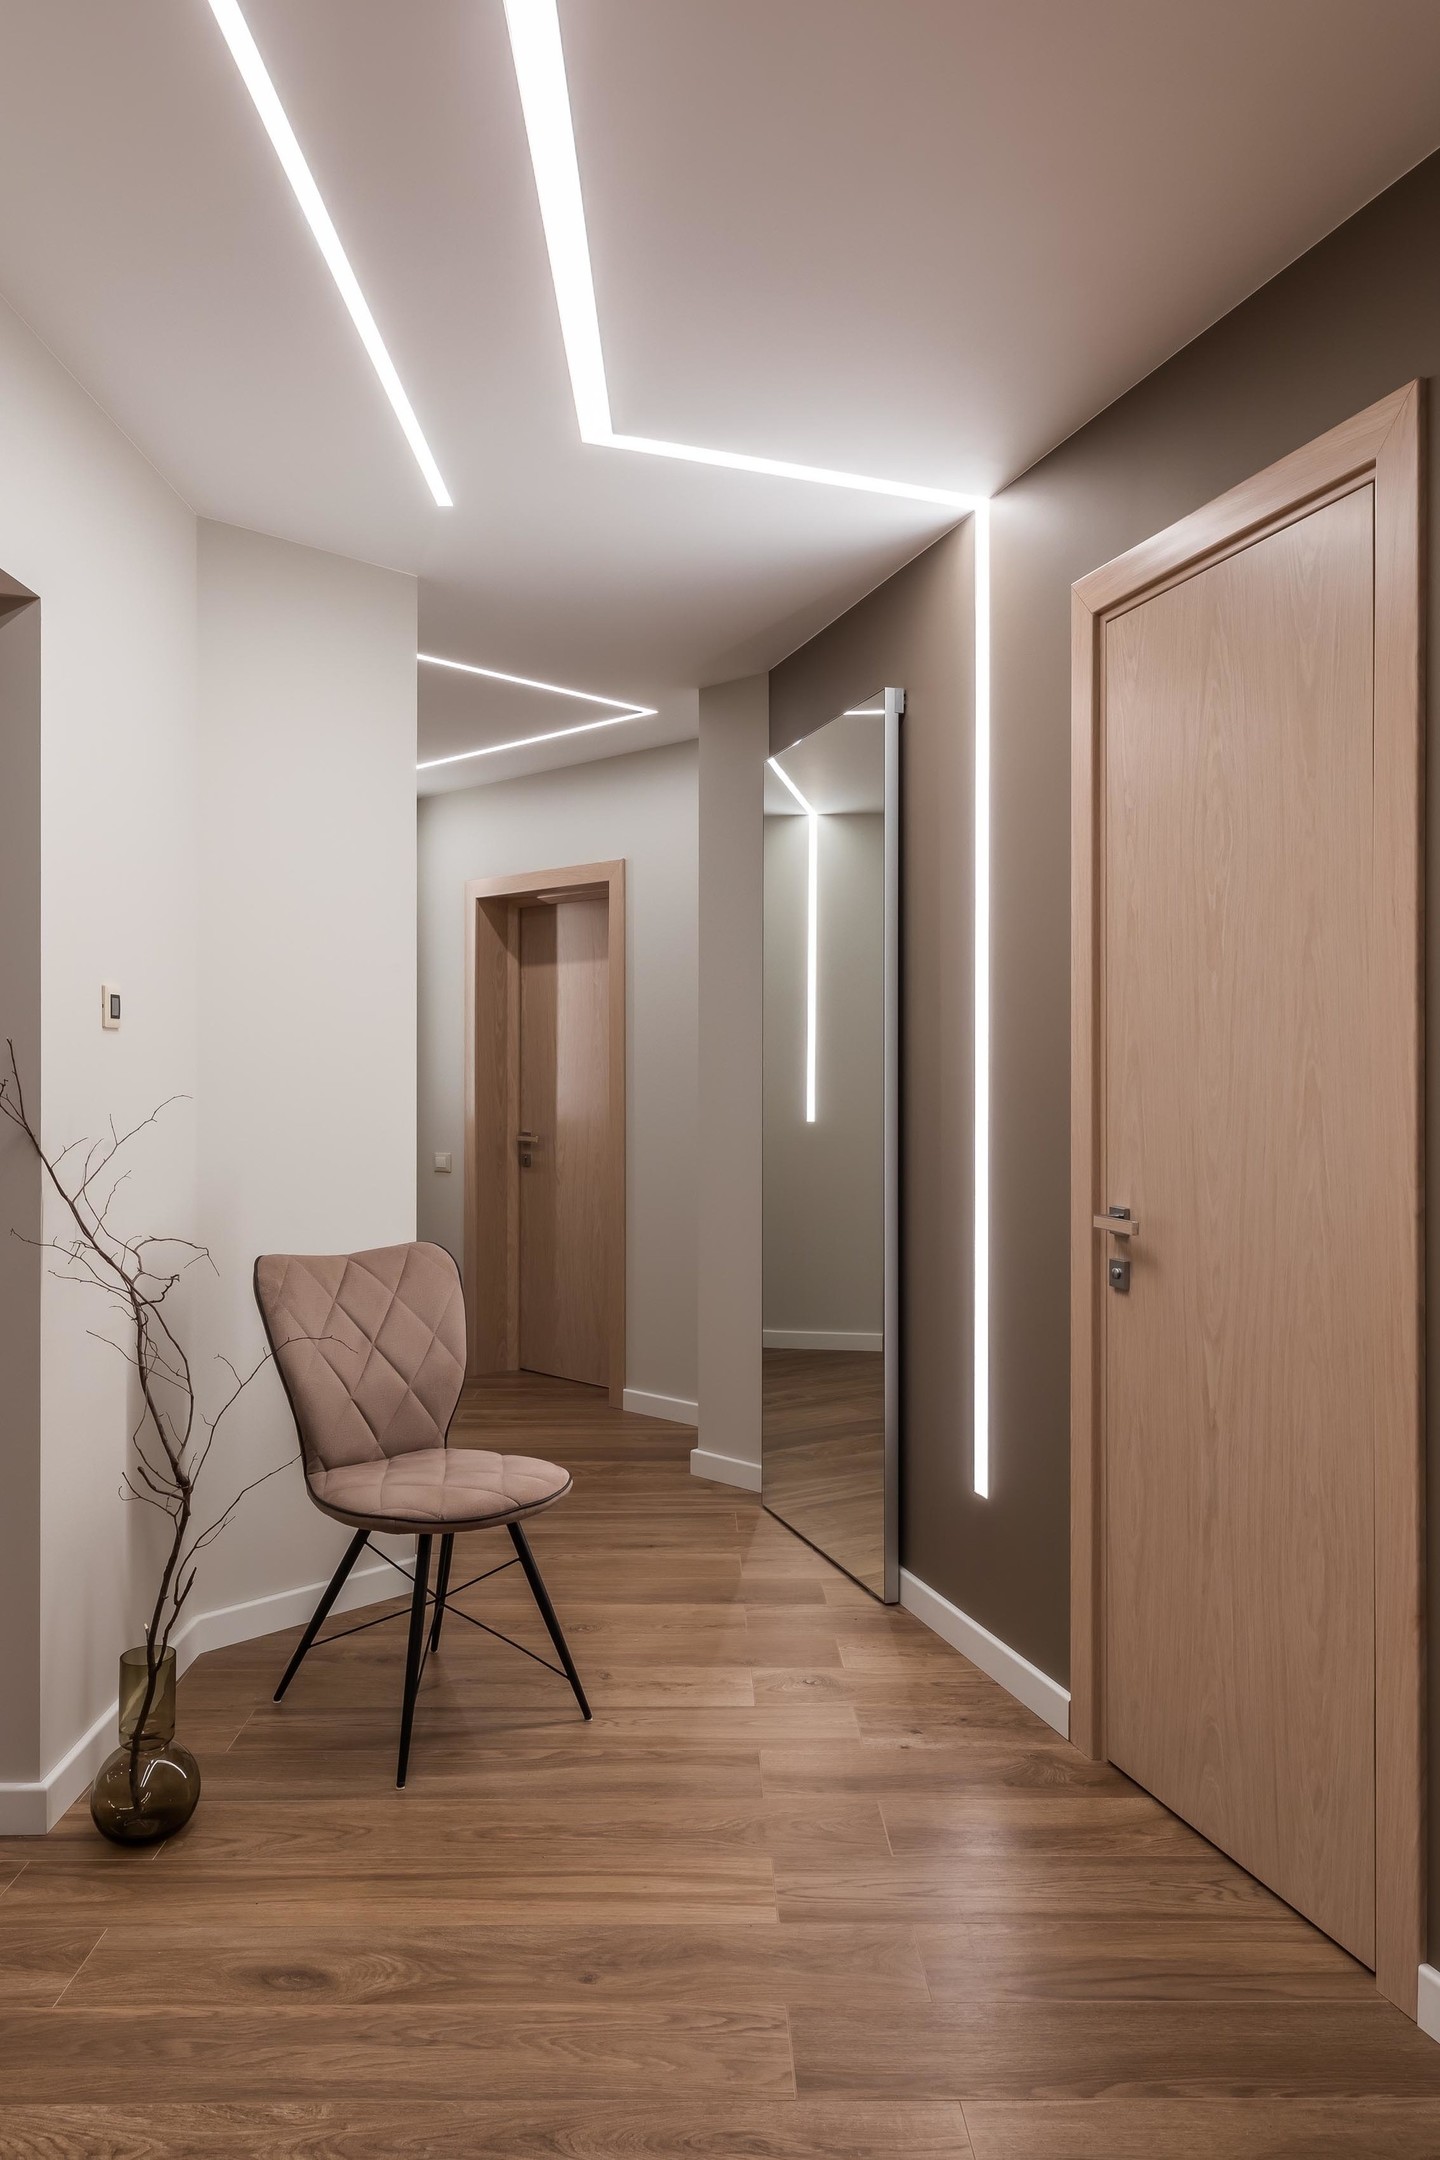 Lối vào căn hộ siêu đẹp với hệ thống đèn Led tuyến tính tích hợp, kéo dài từ trần nhà đến bức tường, phản chiếu qua cửa trượt gương càng 'nhân đôi' ánh sáng.